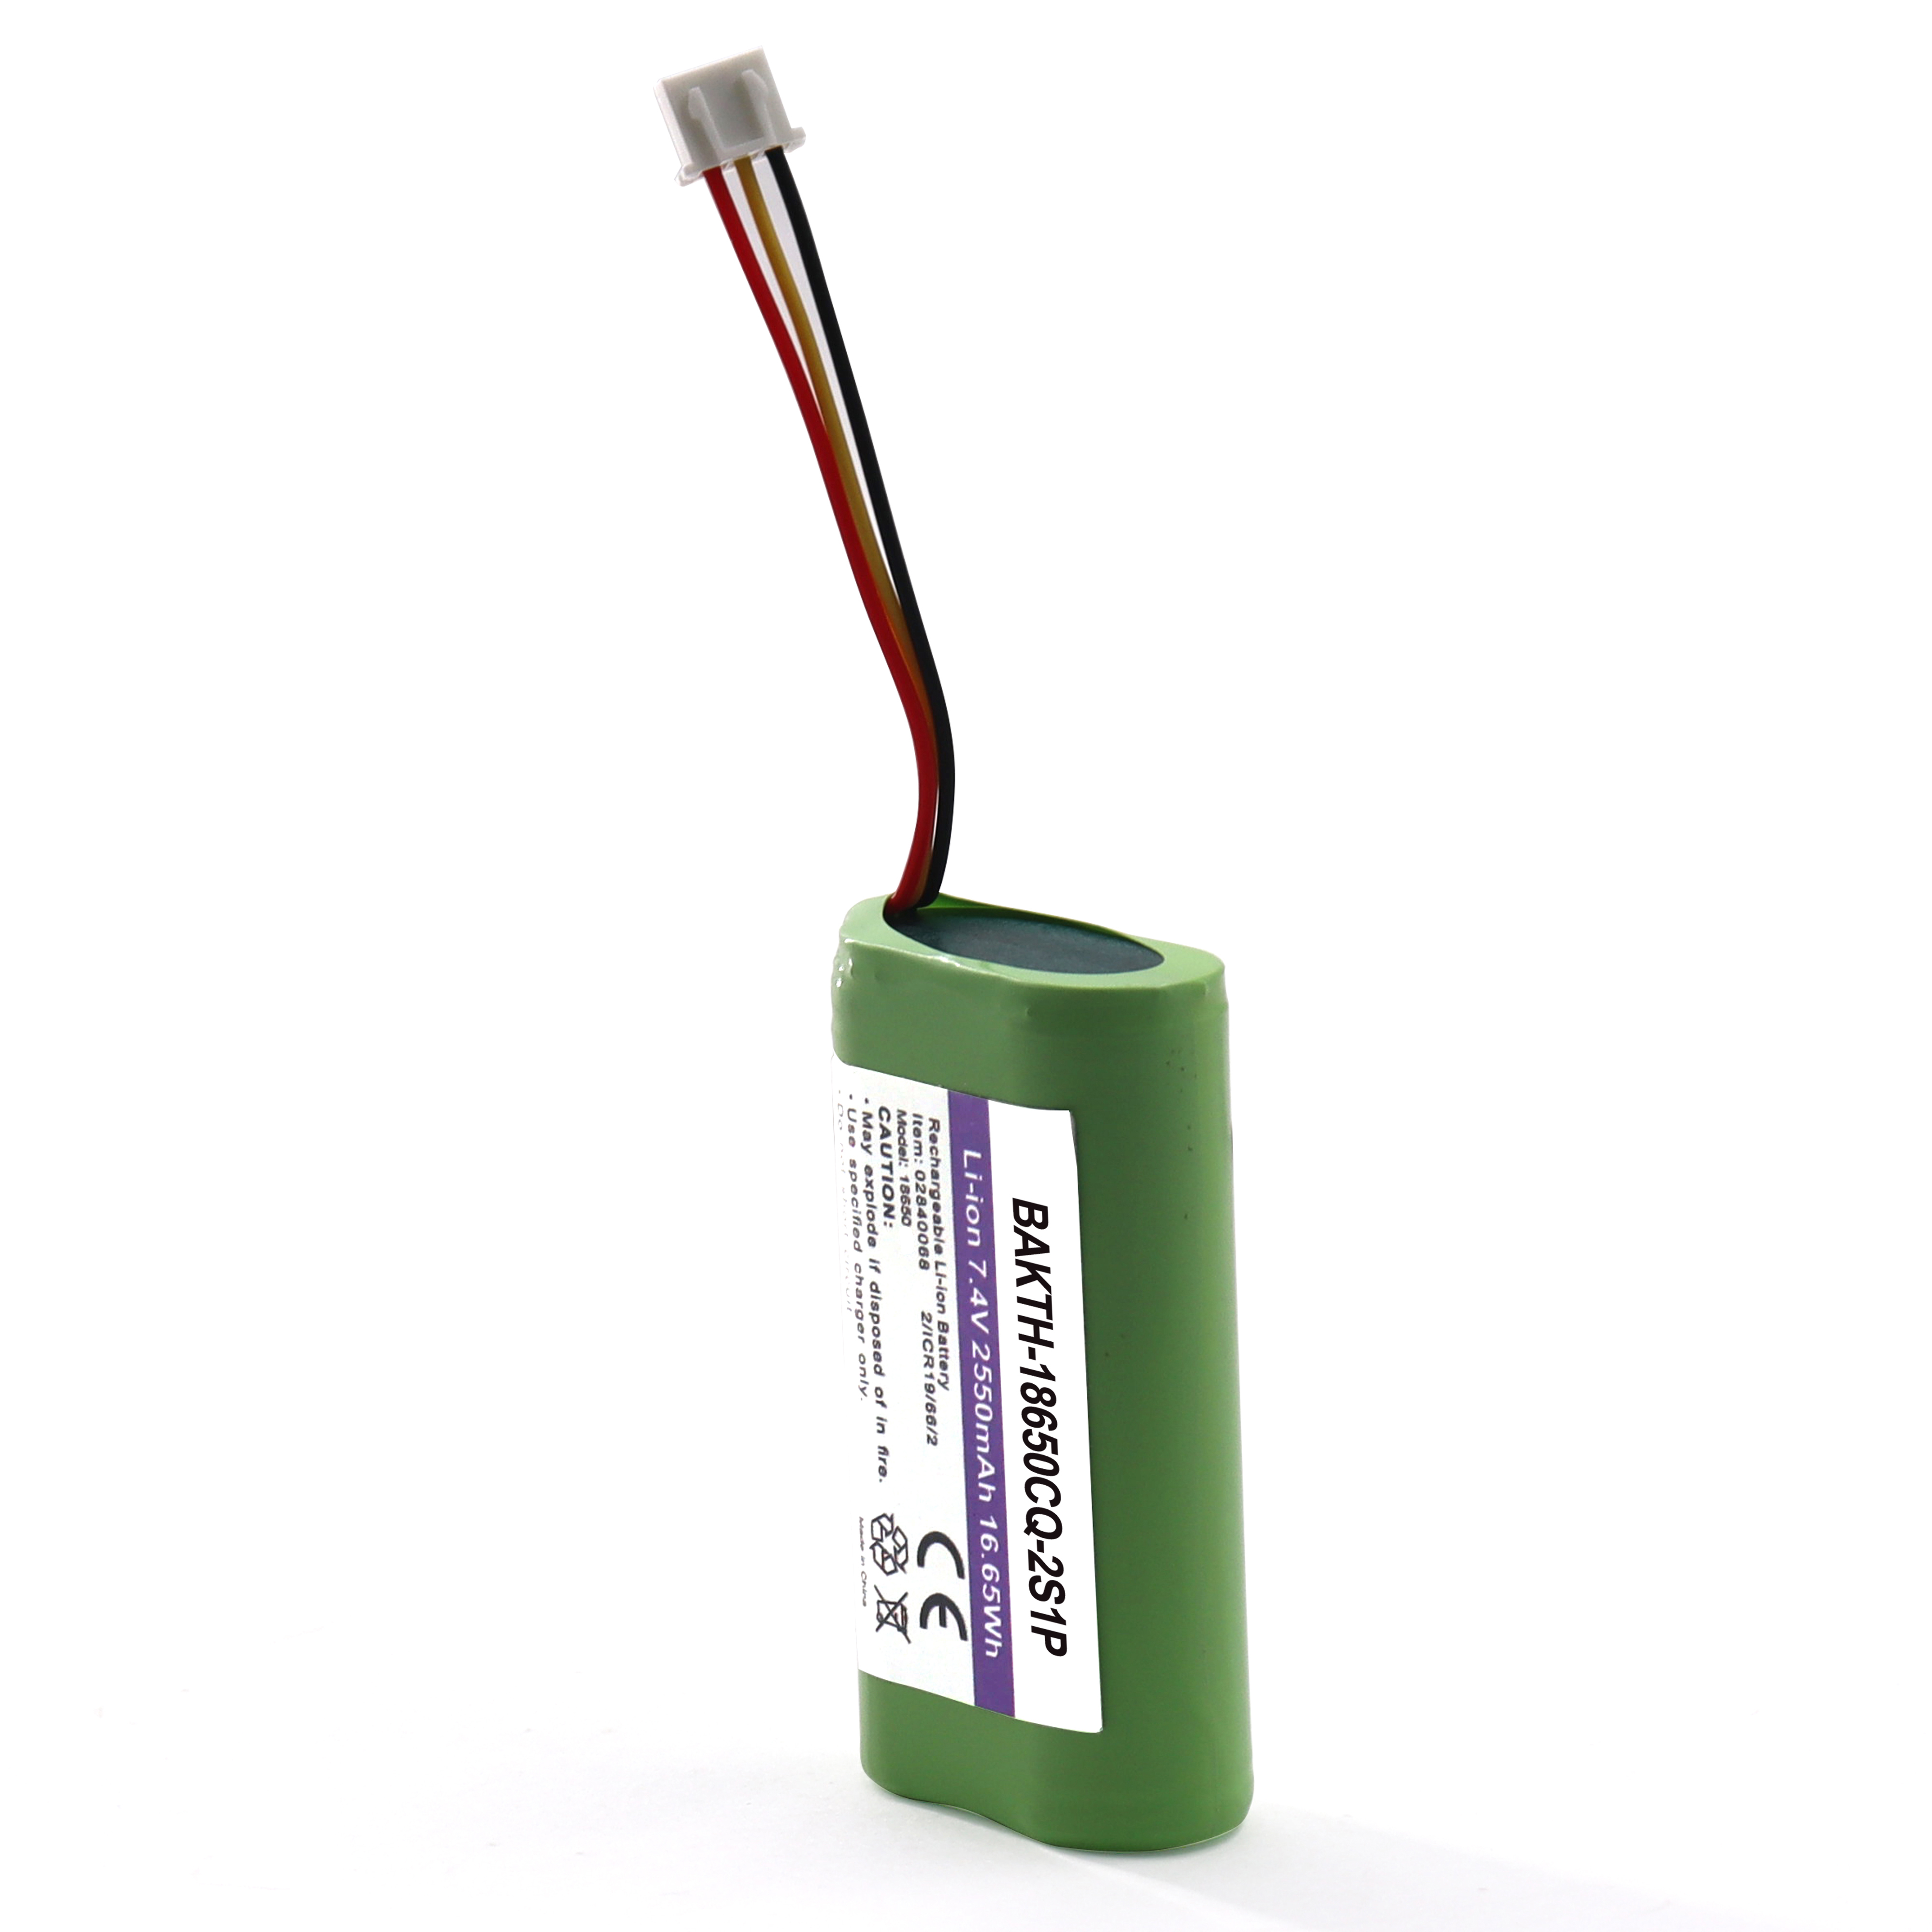 BAKTH-18650CQ-2S1P 7.4V 2550mAh Vente chaude Rechargeable Lithium Ion Battery Pack Pack Pack pour les appareils d'application électriques